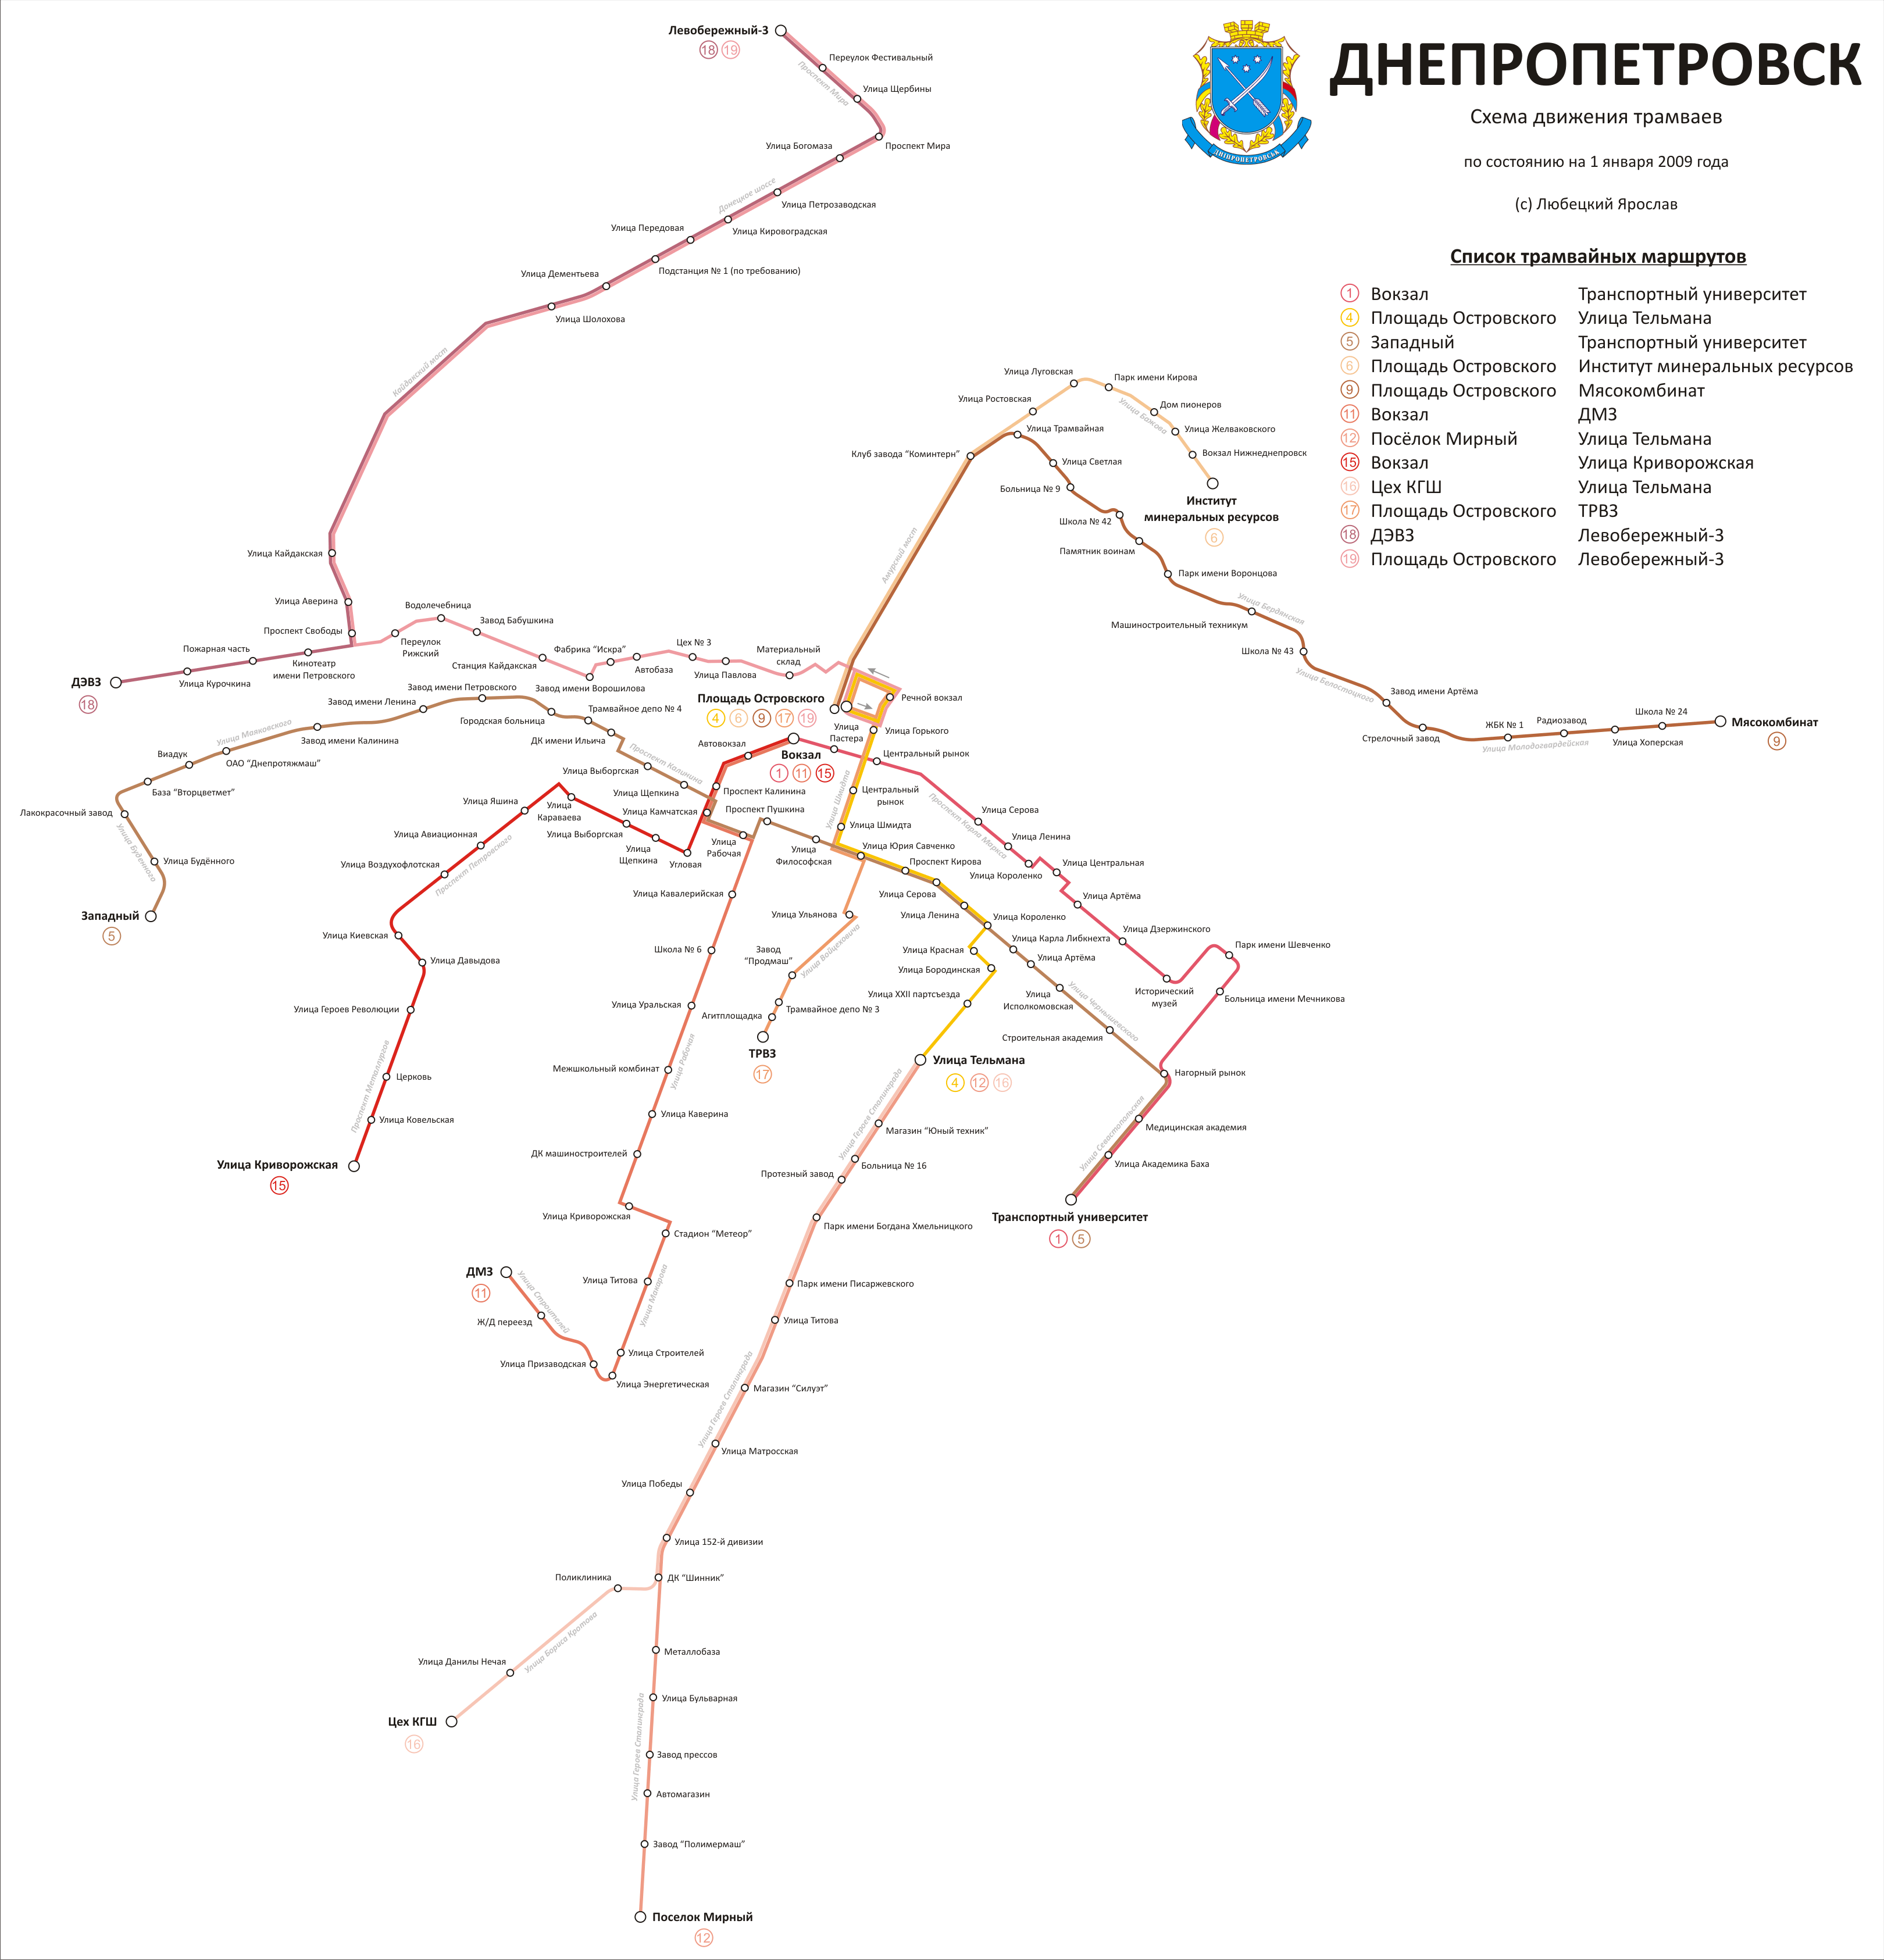 Dniepr — Maps